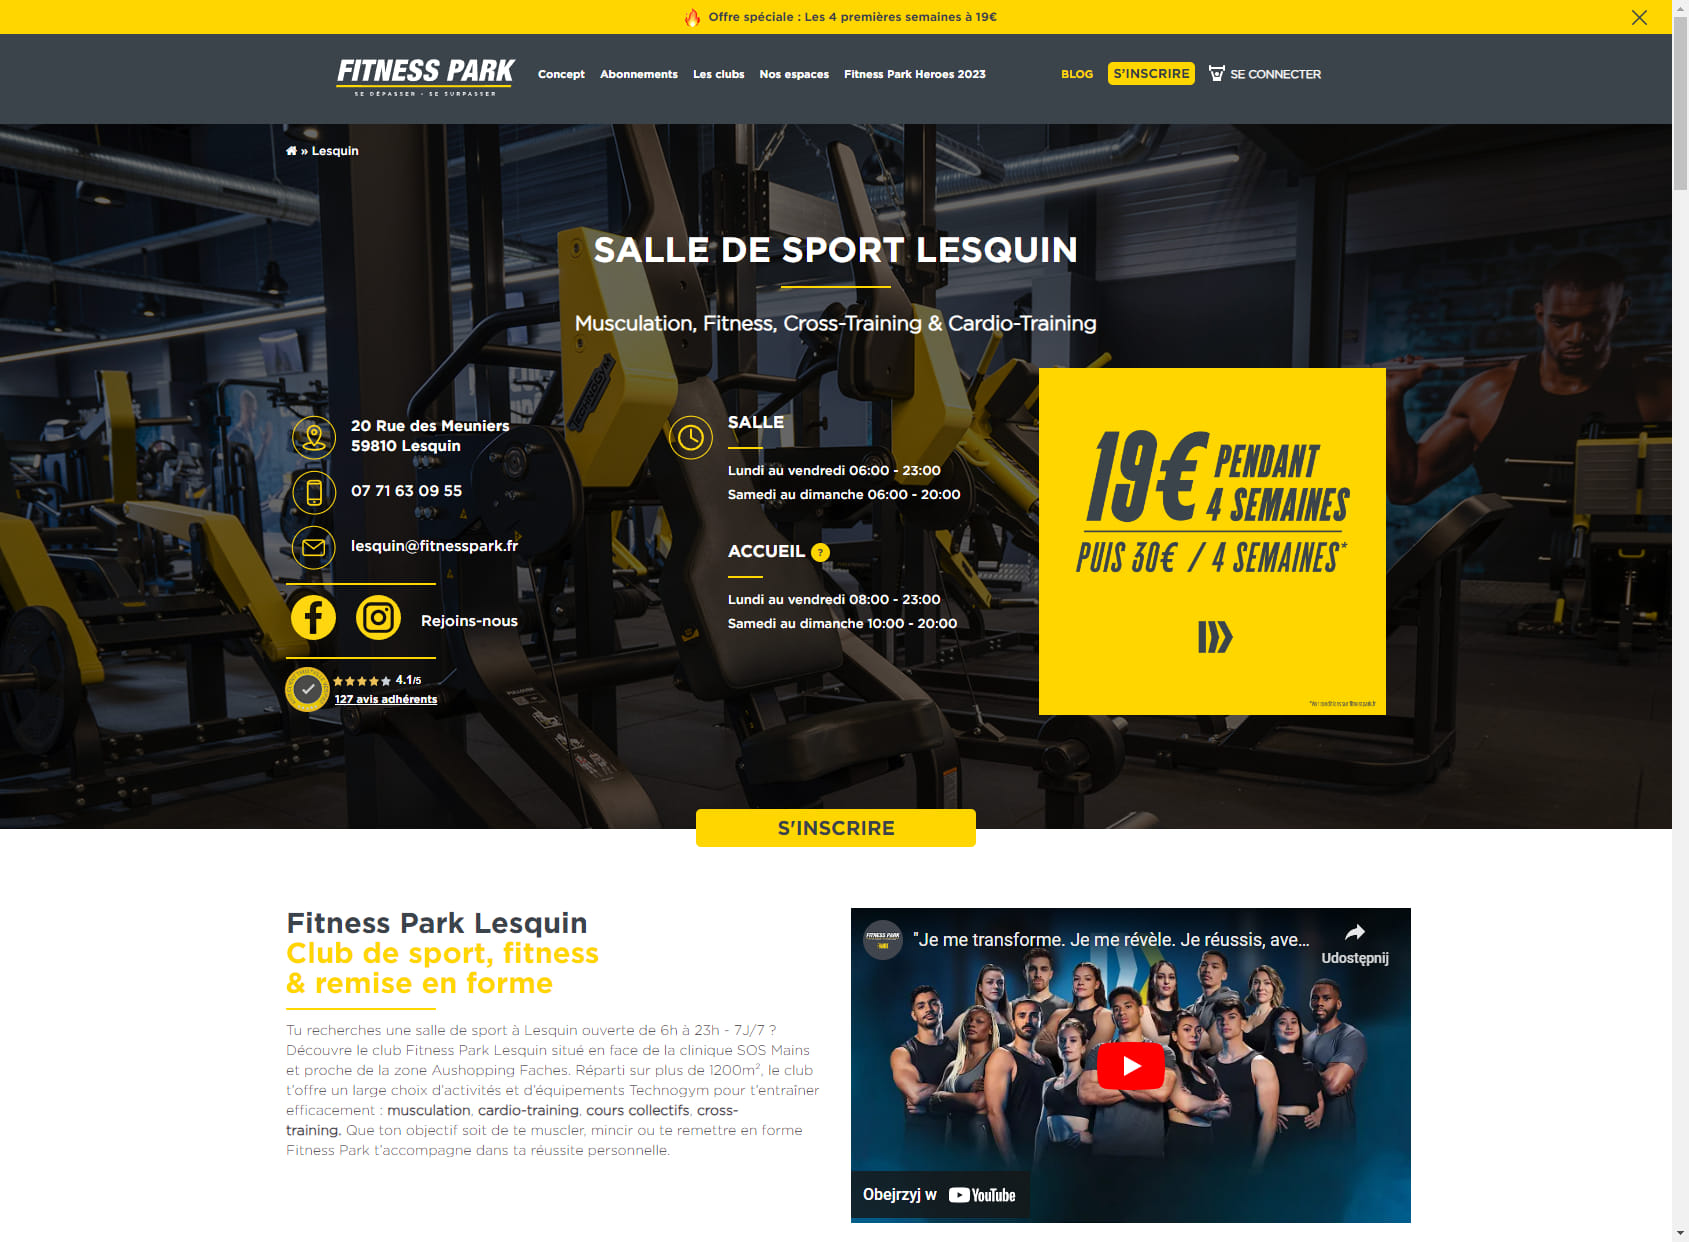 Salle de sport Lesquin - Fitness Park